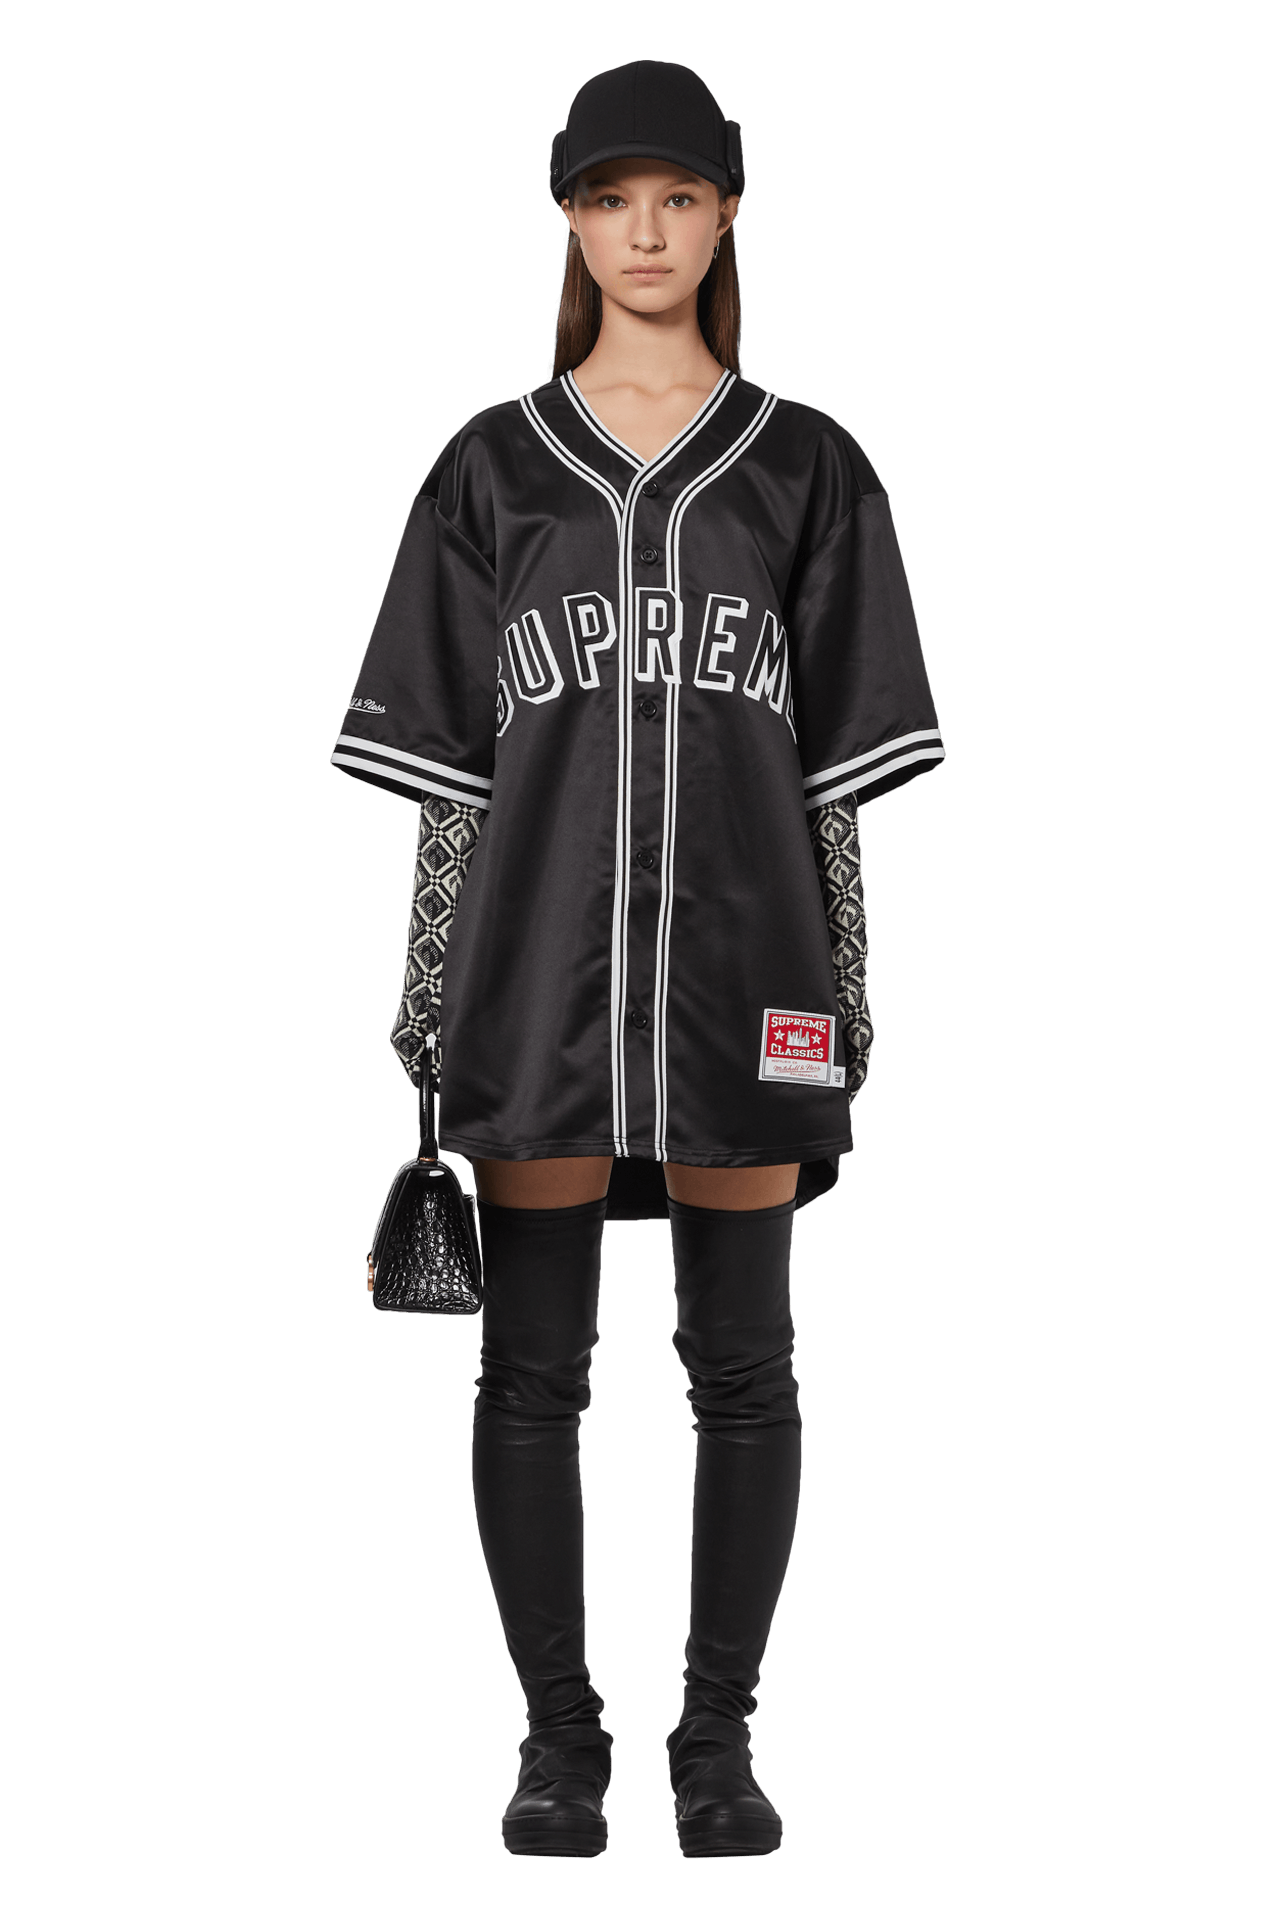 Supreme x Mitchell & Ness Satin Baseball Jersey 'Black'